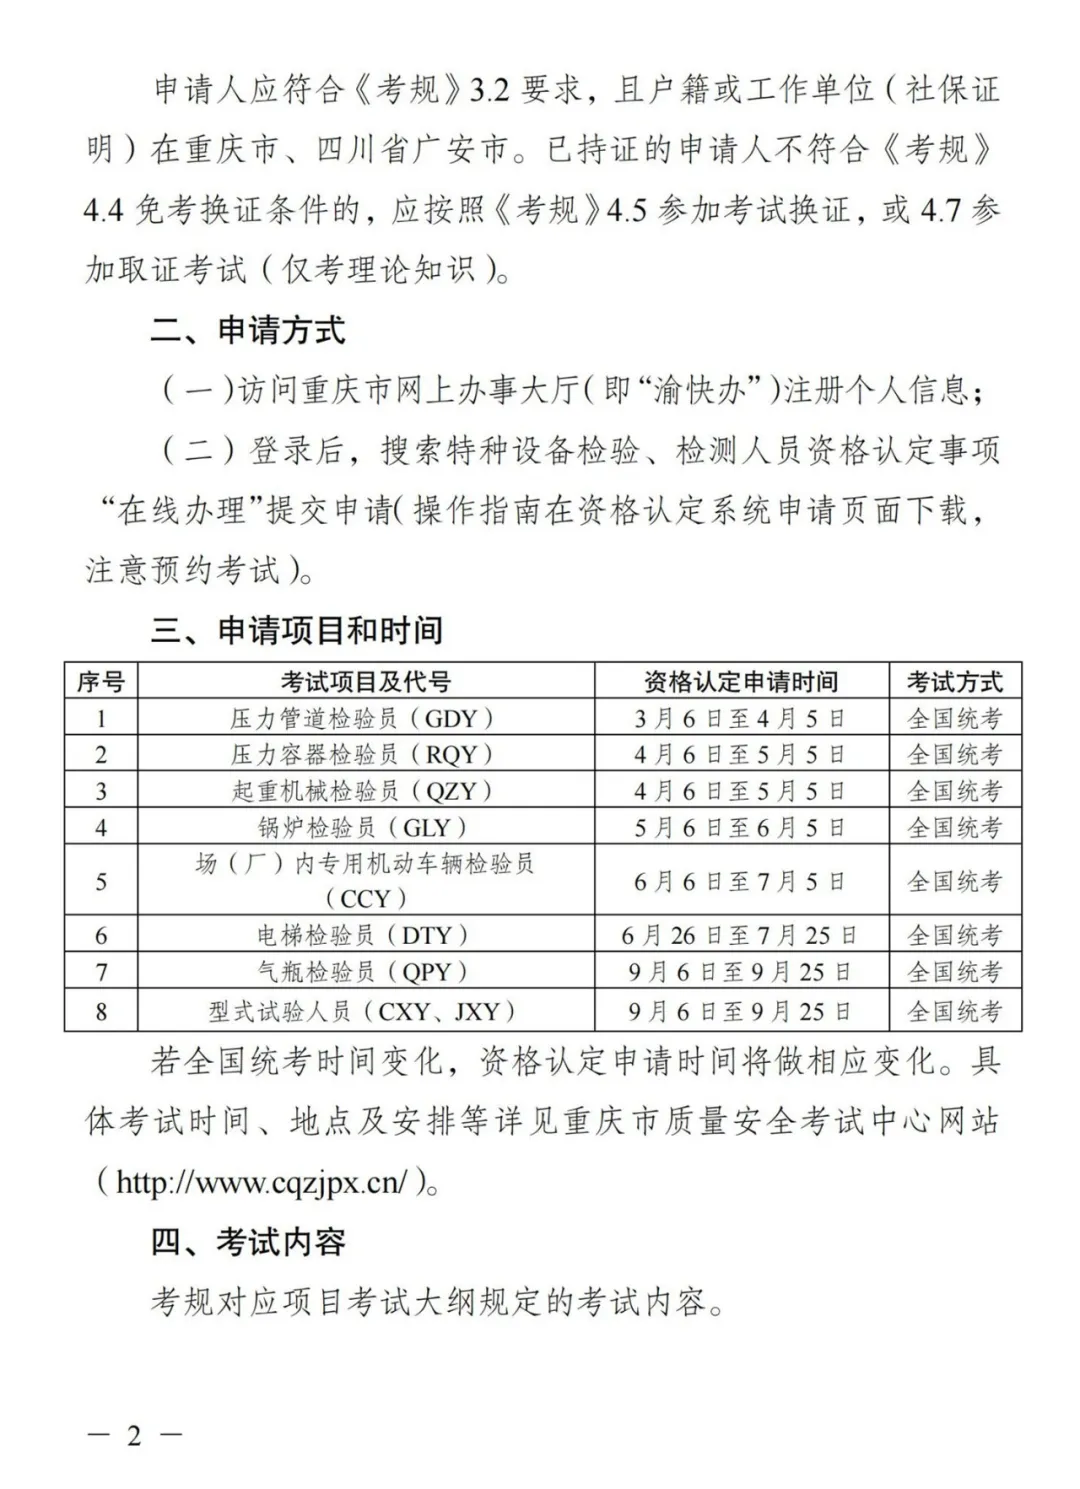 重庆：2024年特种设备检验员考试通知已公布！